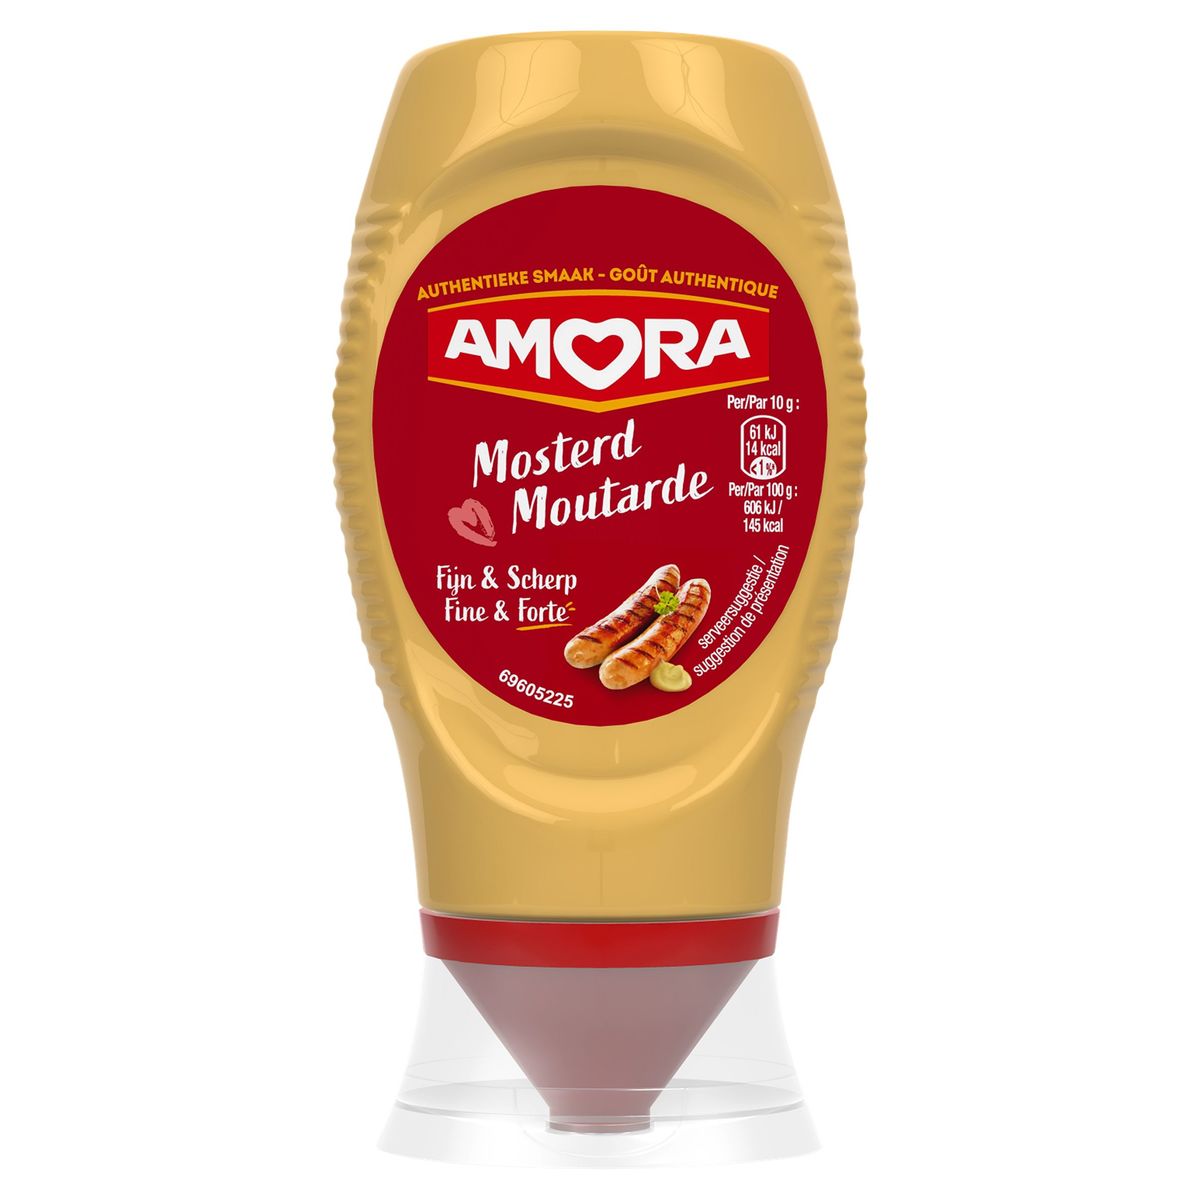 Amora Mosterd Fijn & Scherp 265 g